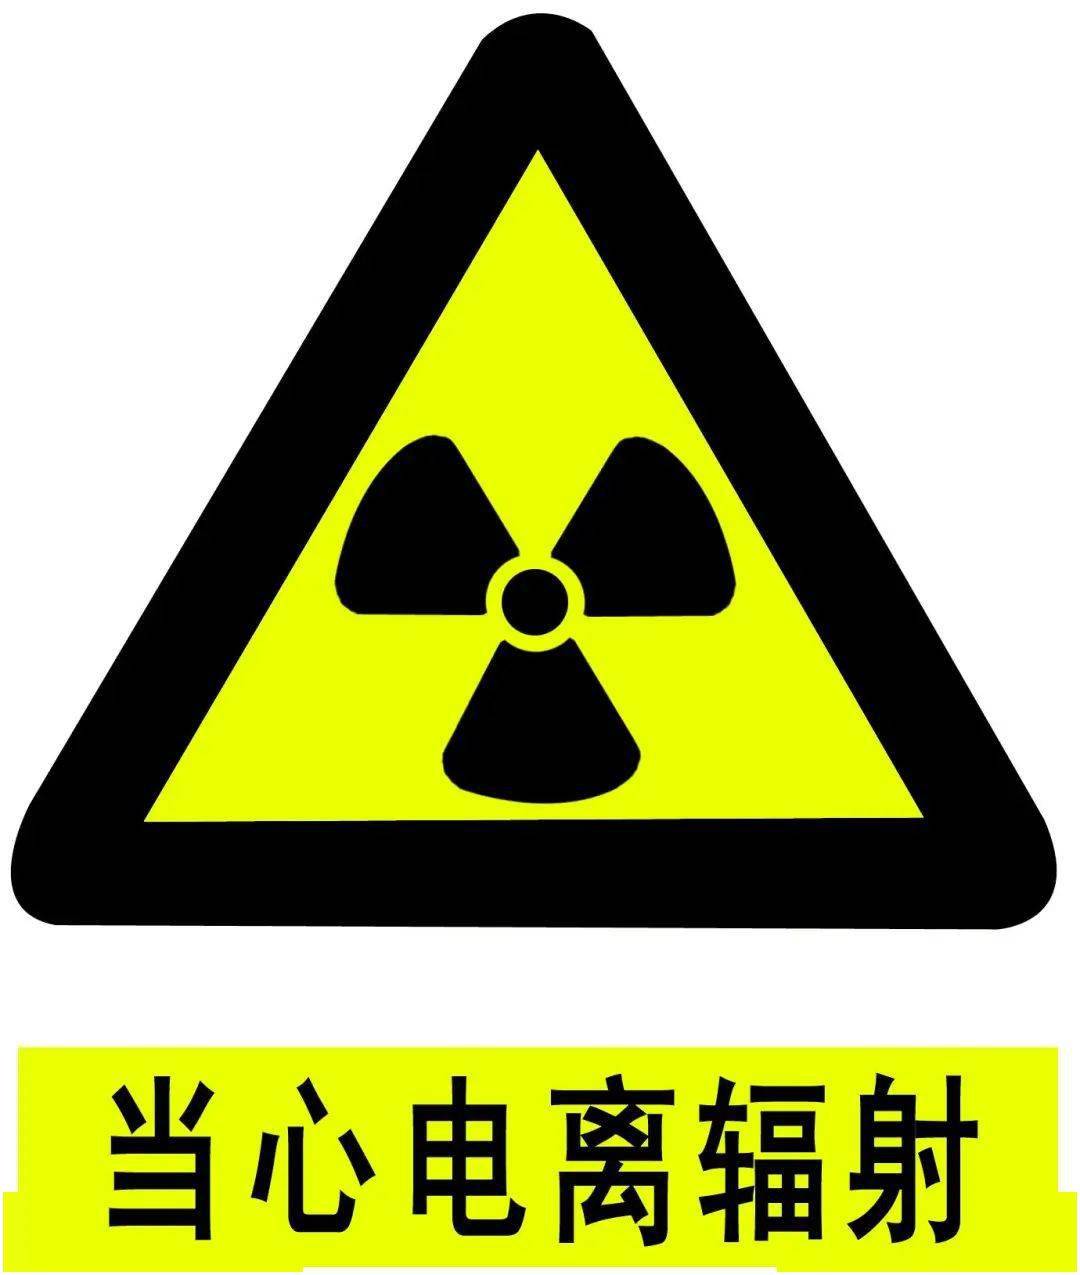 非电离辐射 一,电离辐射 1 电离辐射标志 电离辐射标志与警告(如下图)